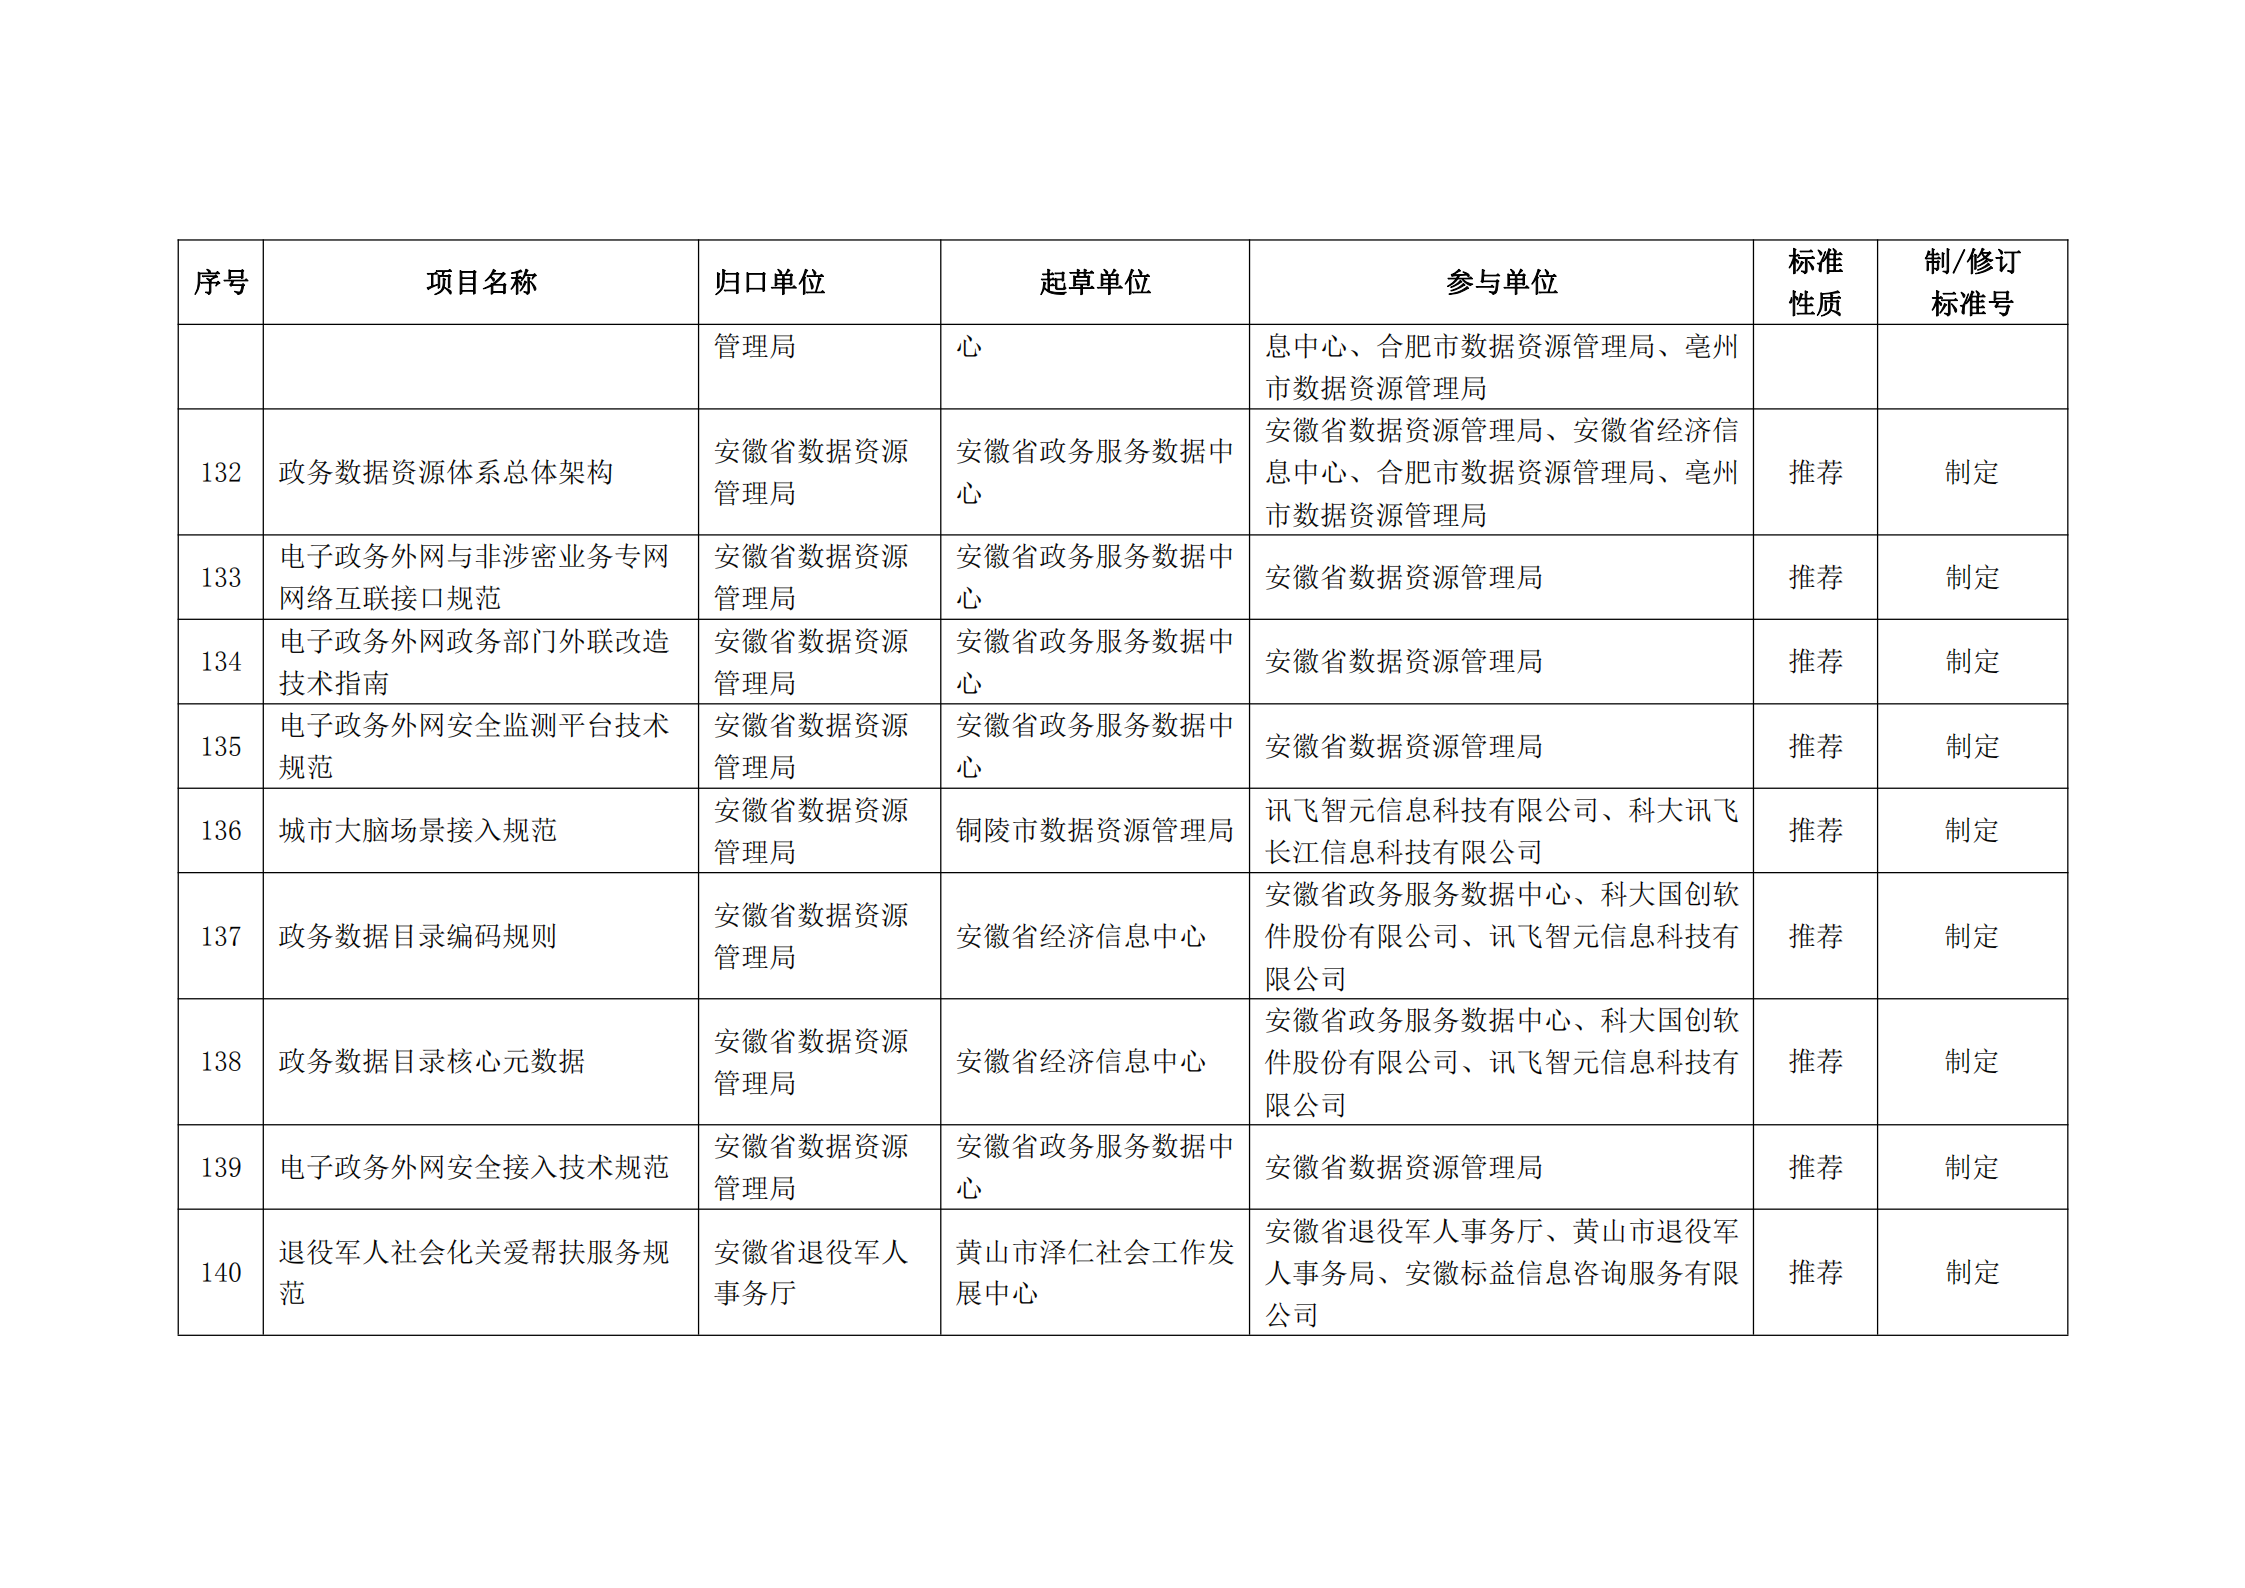 2020 年第二批安徽省地方标准制、修订计划项目汇总表(图16)